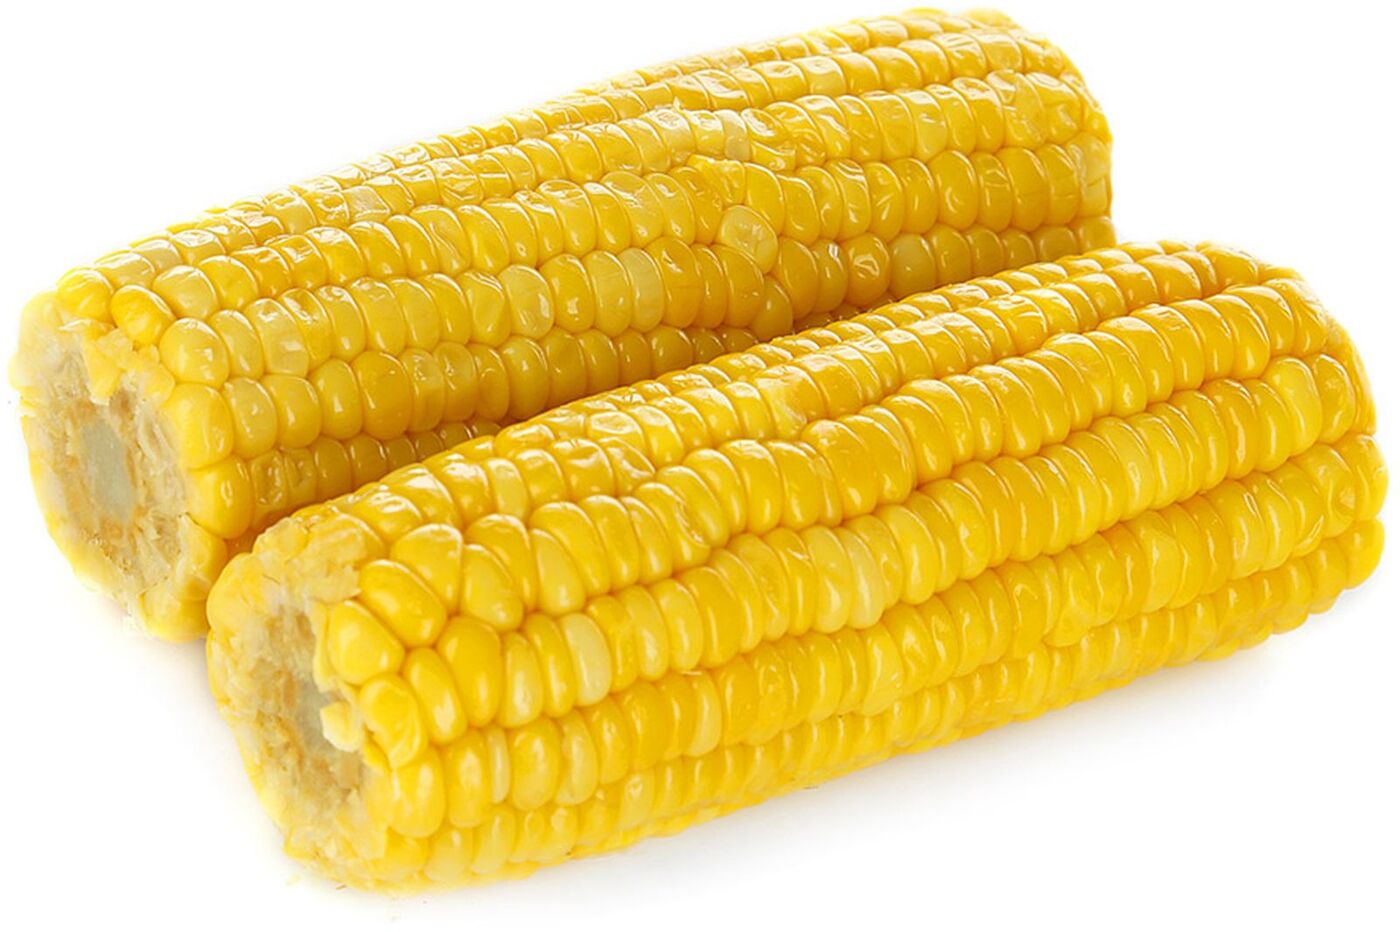 Кукуруза весовая 1кг